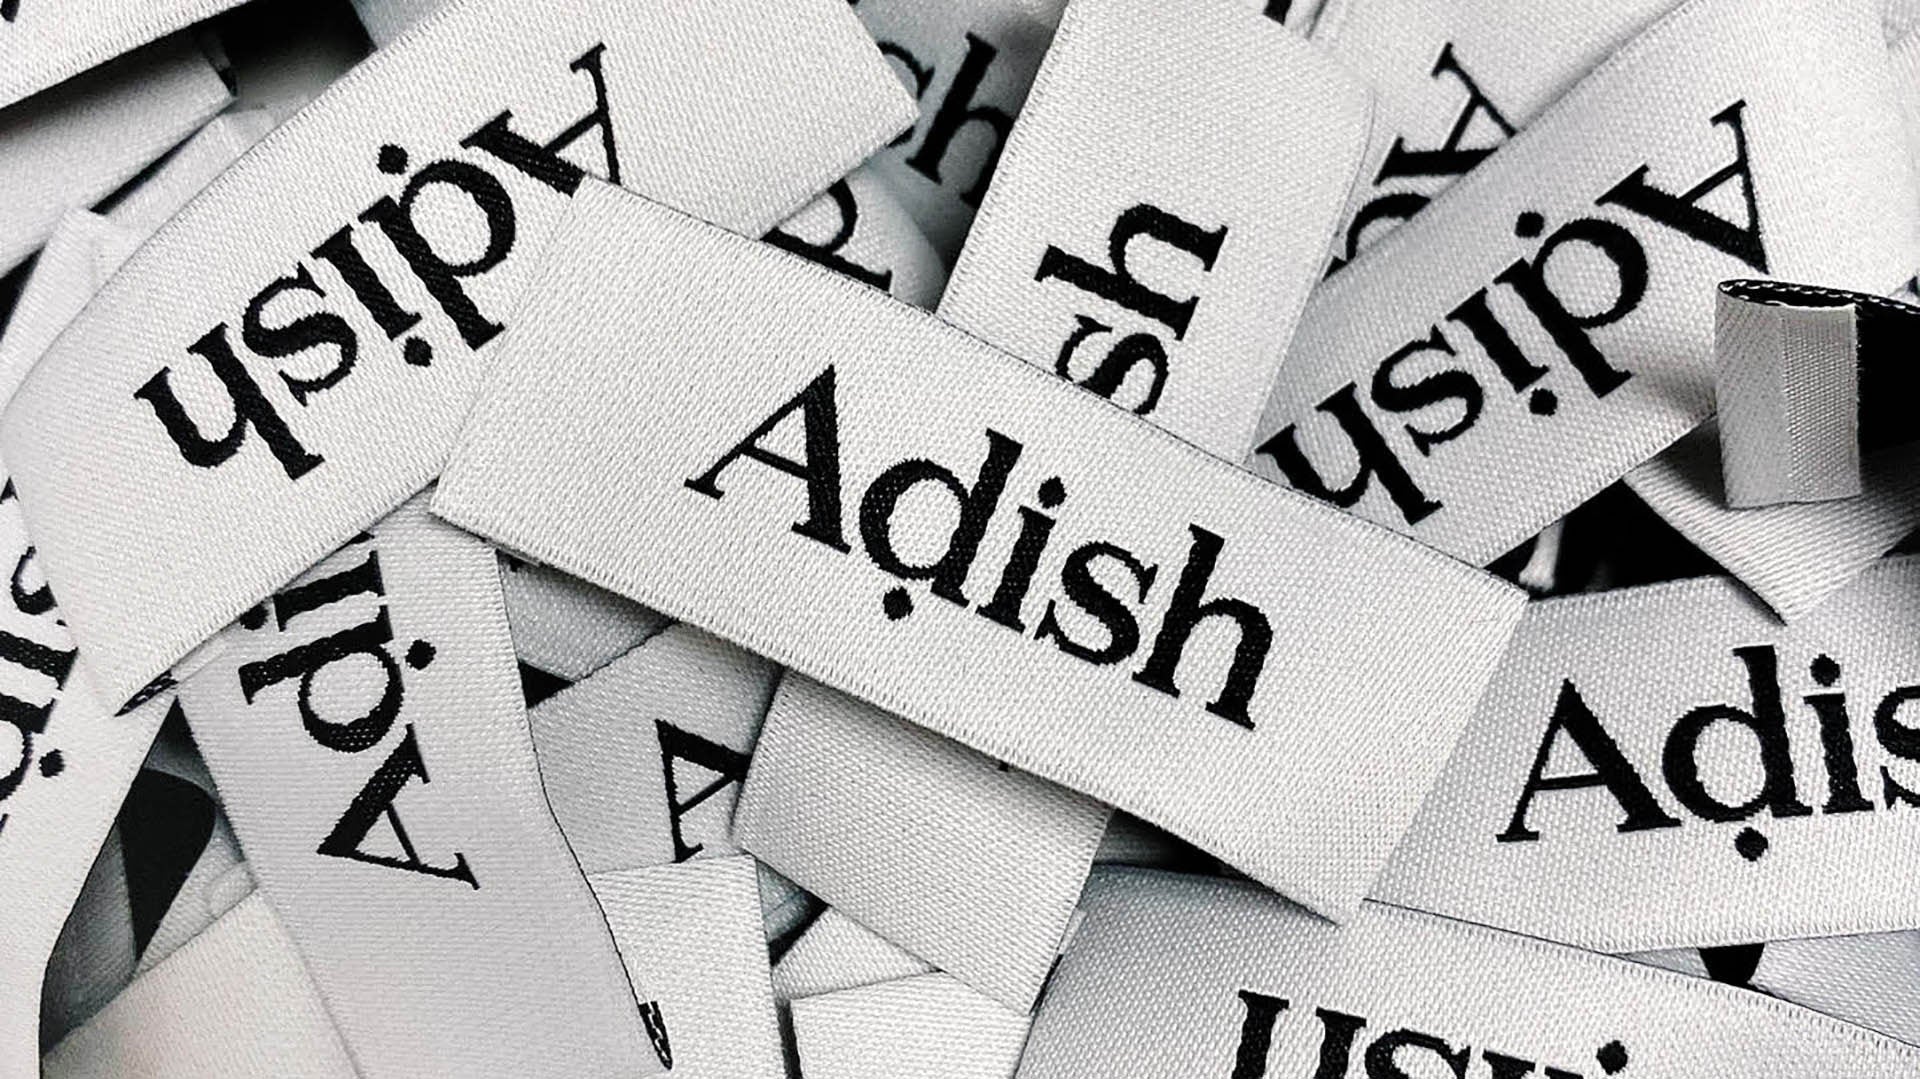 ADISH